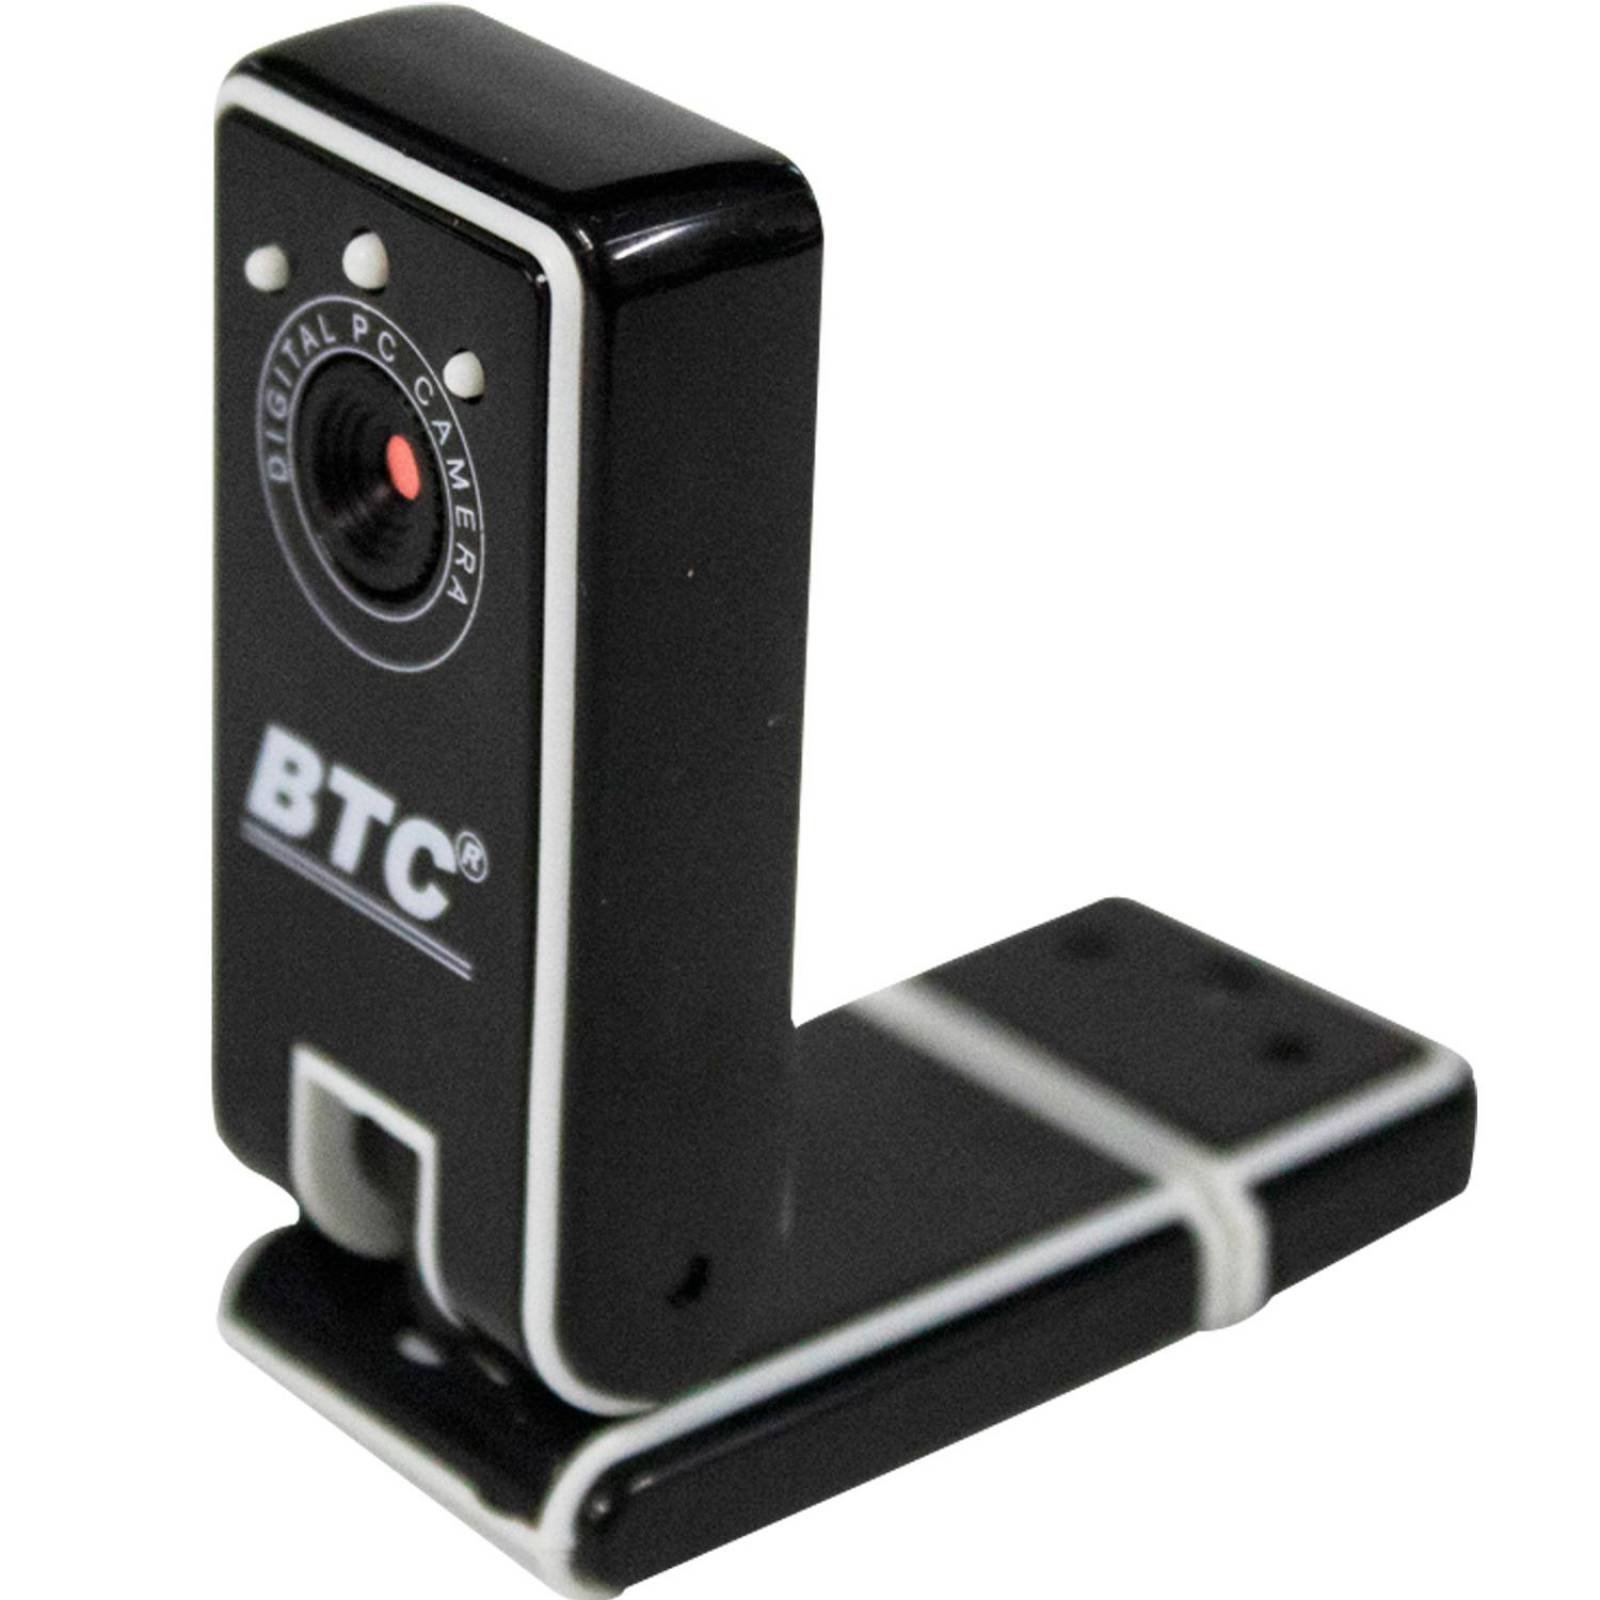 btc webcam modles